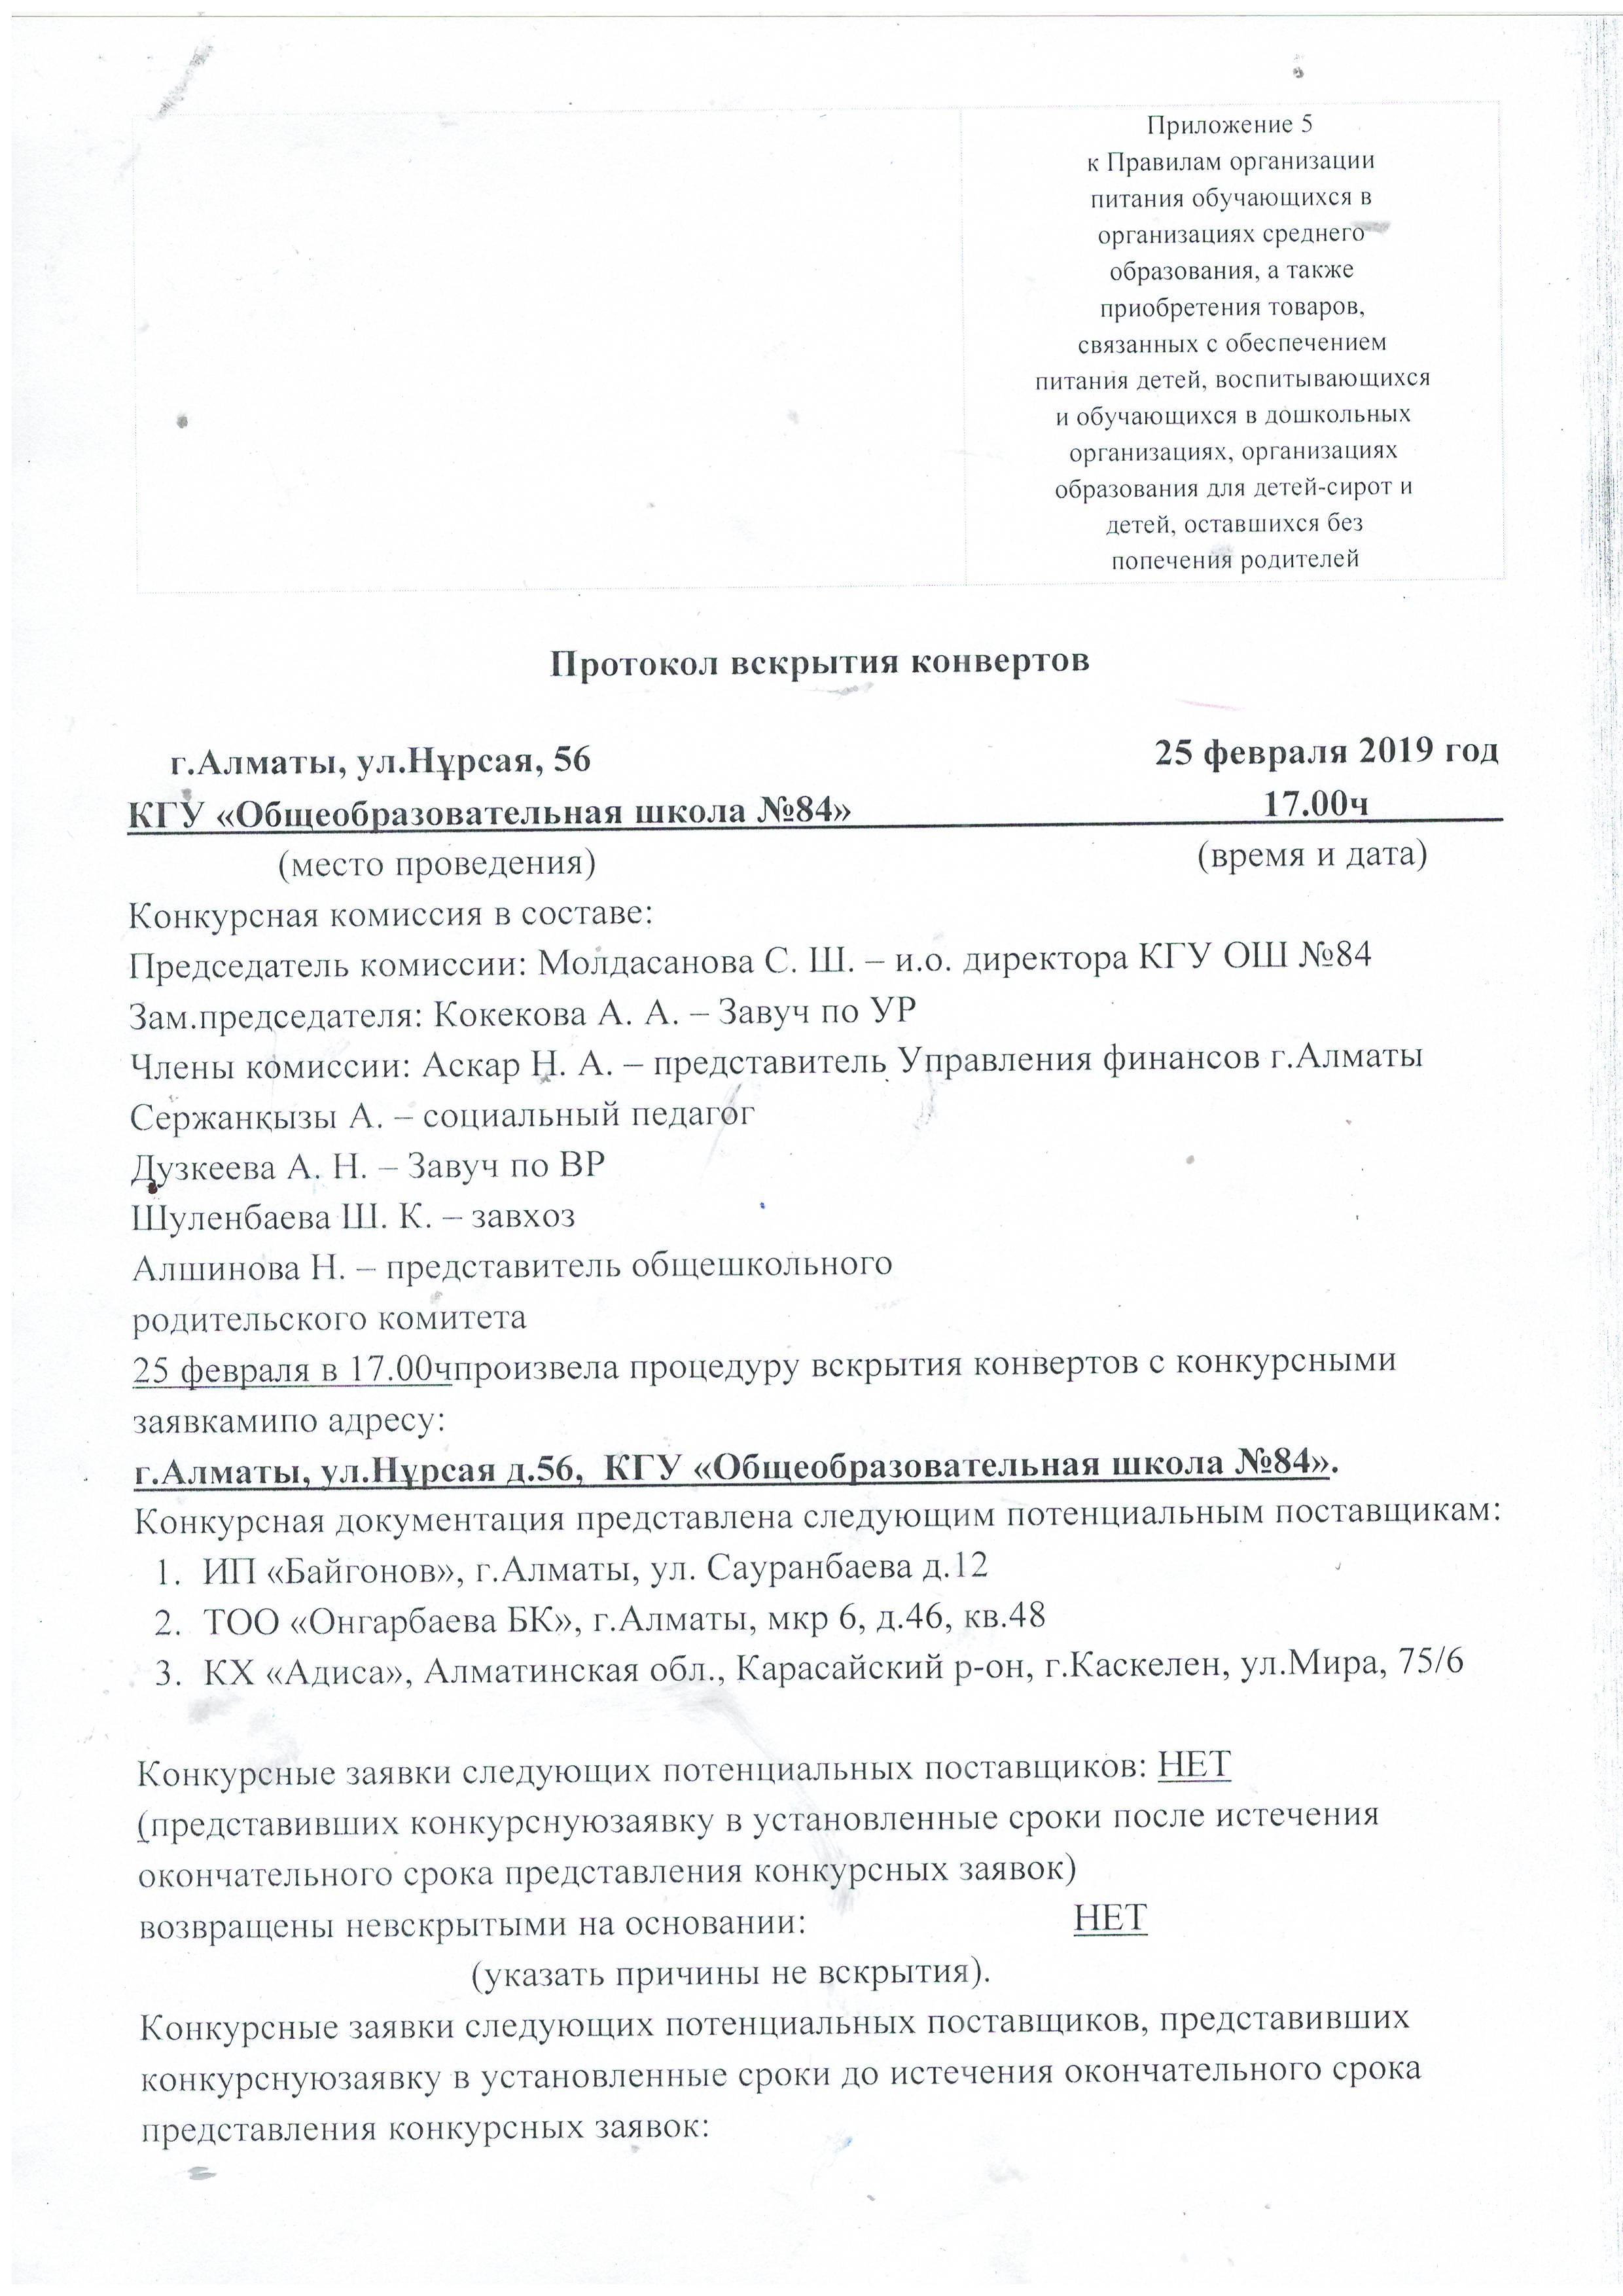 Протокол вскрытия конвертов поставщиков услуг питания в КГУ ОШ№84